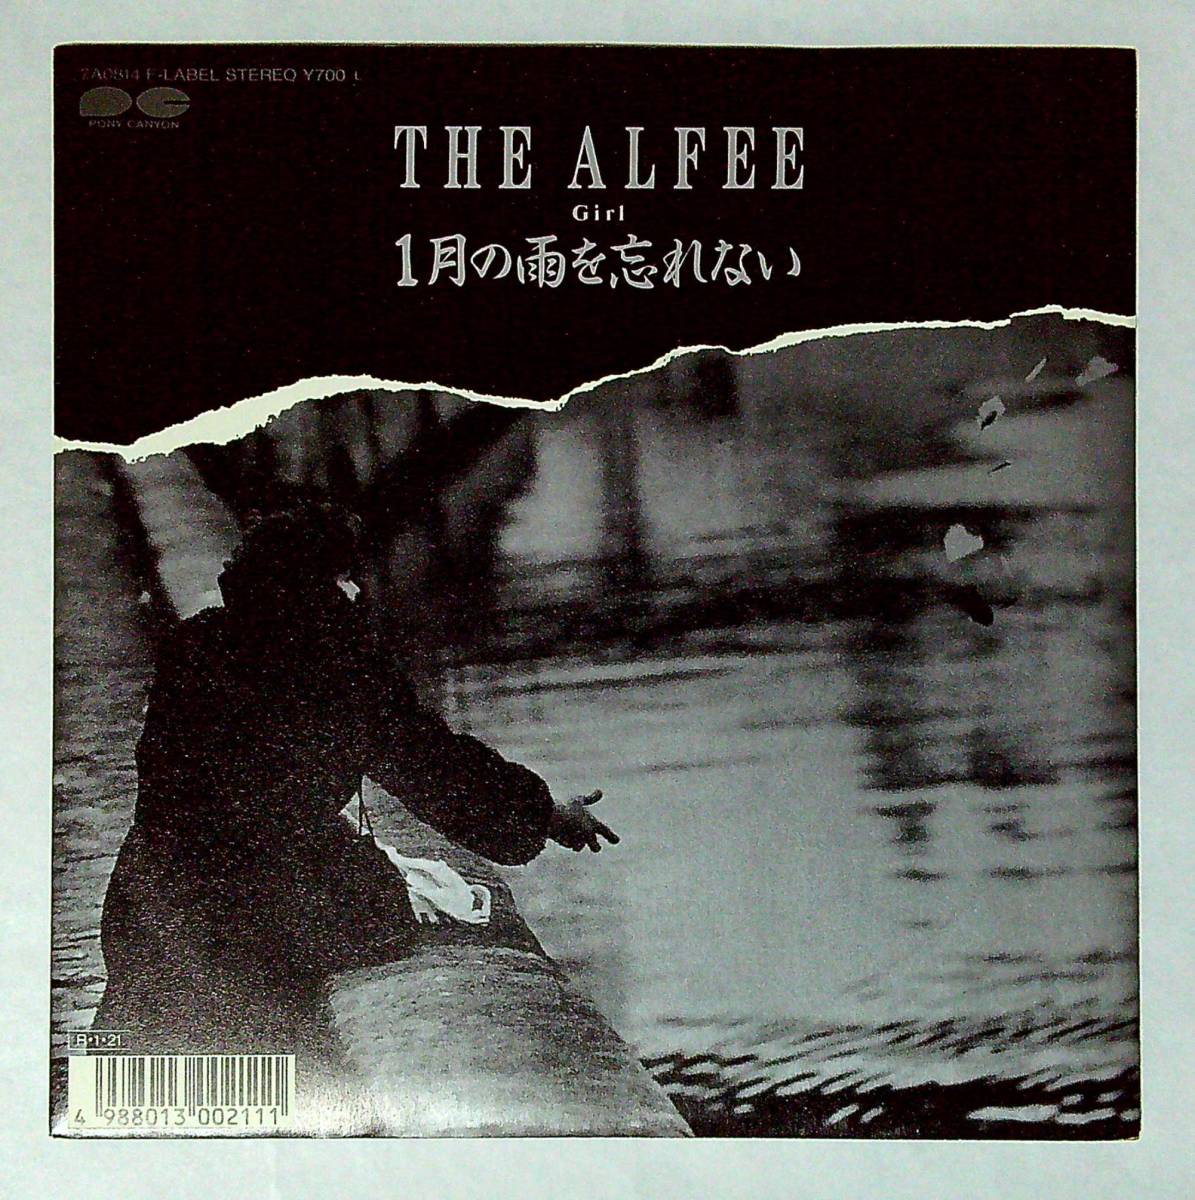 ◆中古EP盤◆THE ALFEE◆ジ・アルフィー◆１月の雨を忘れない◆Girl◆24◆_画像1